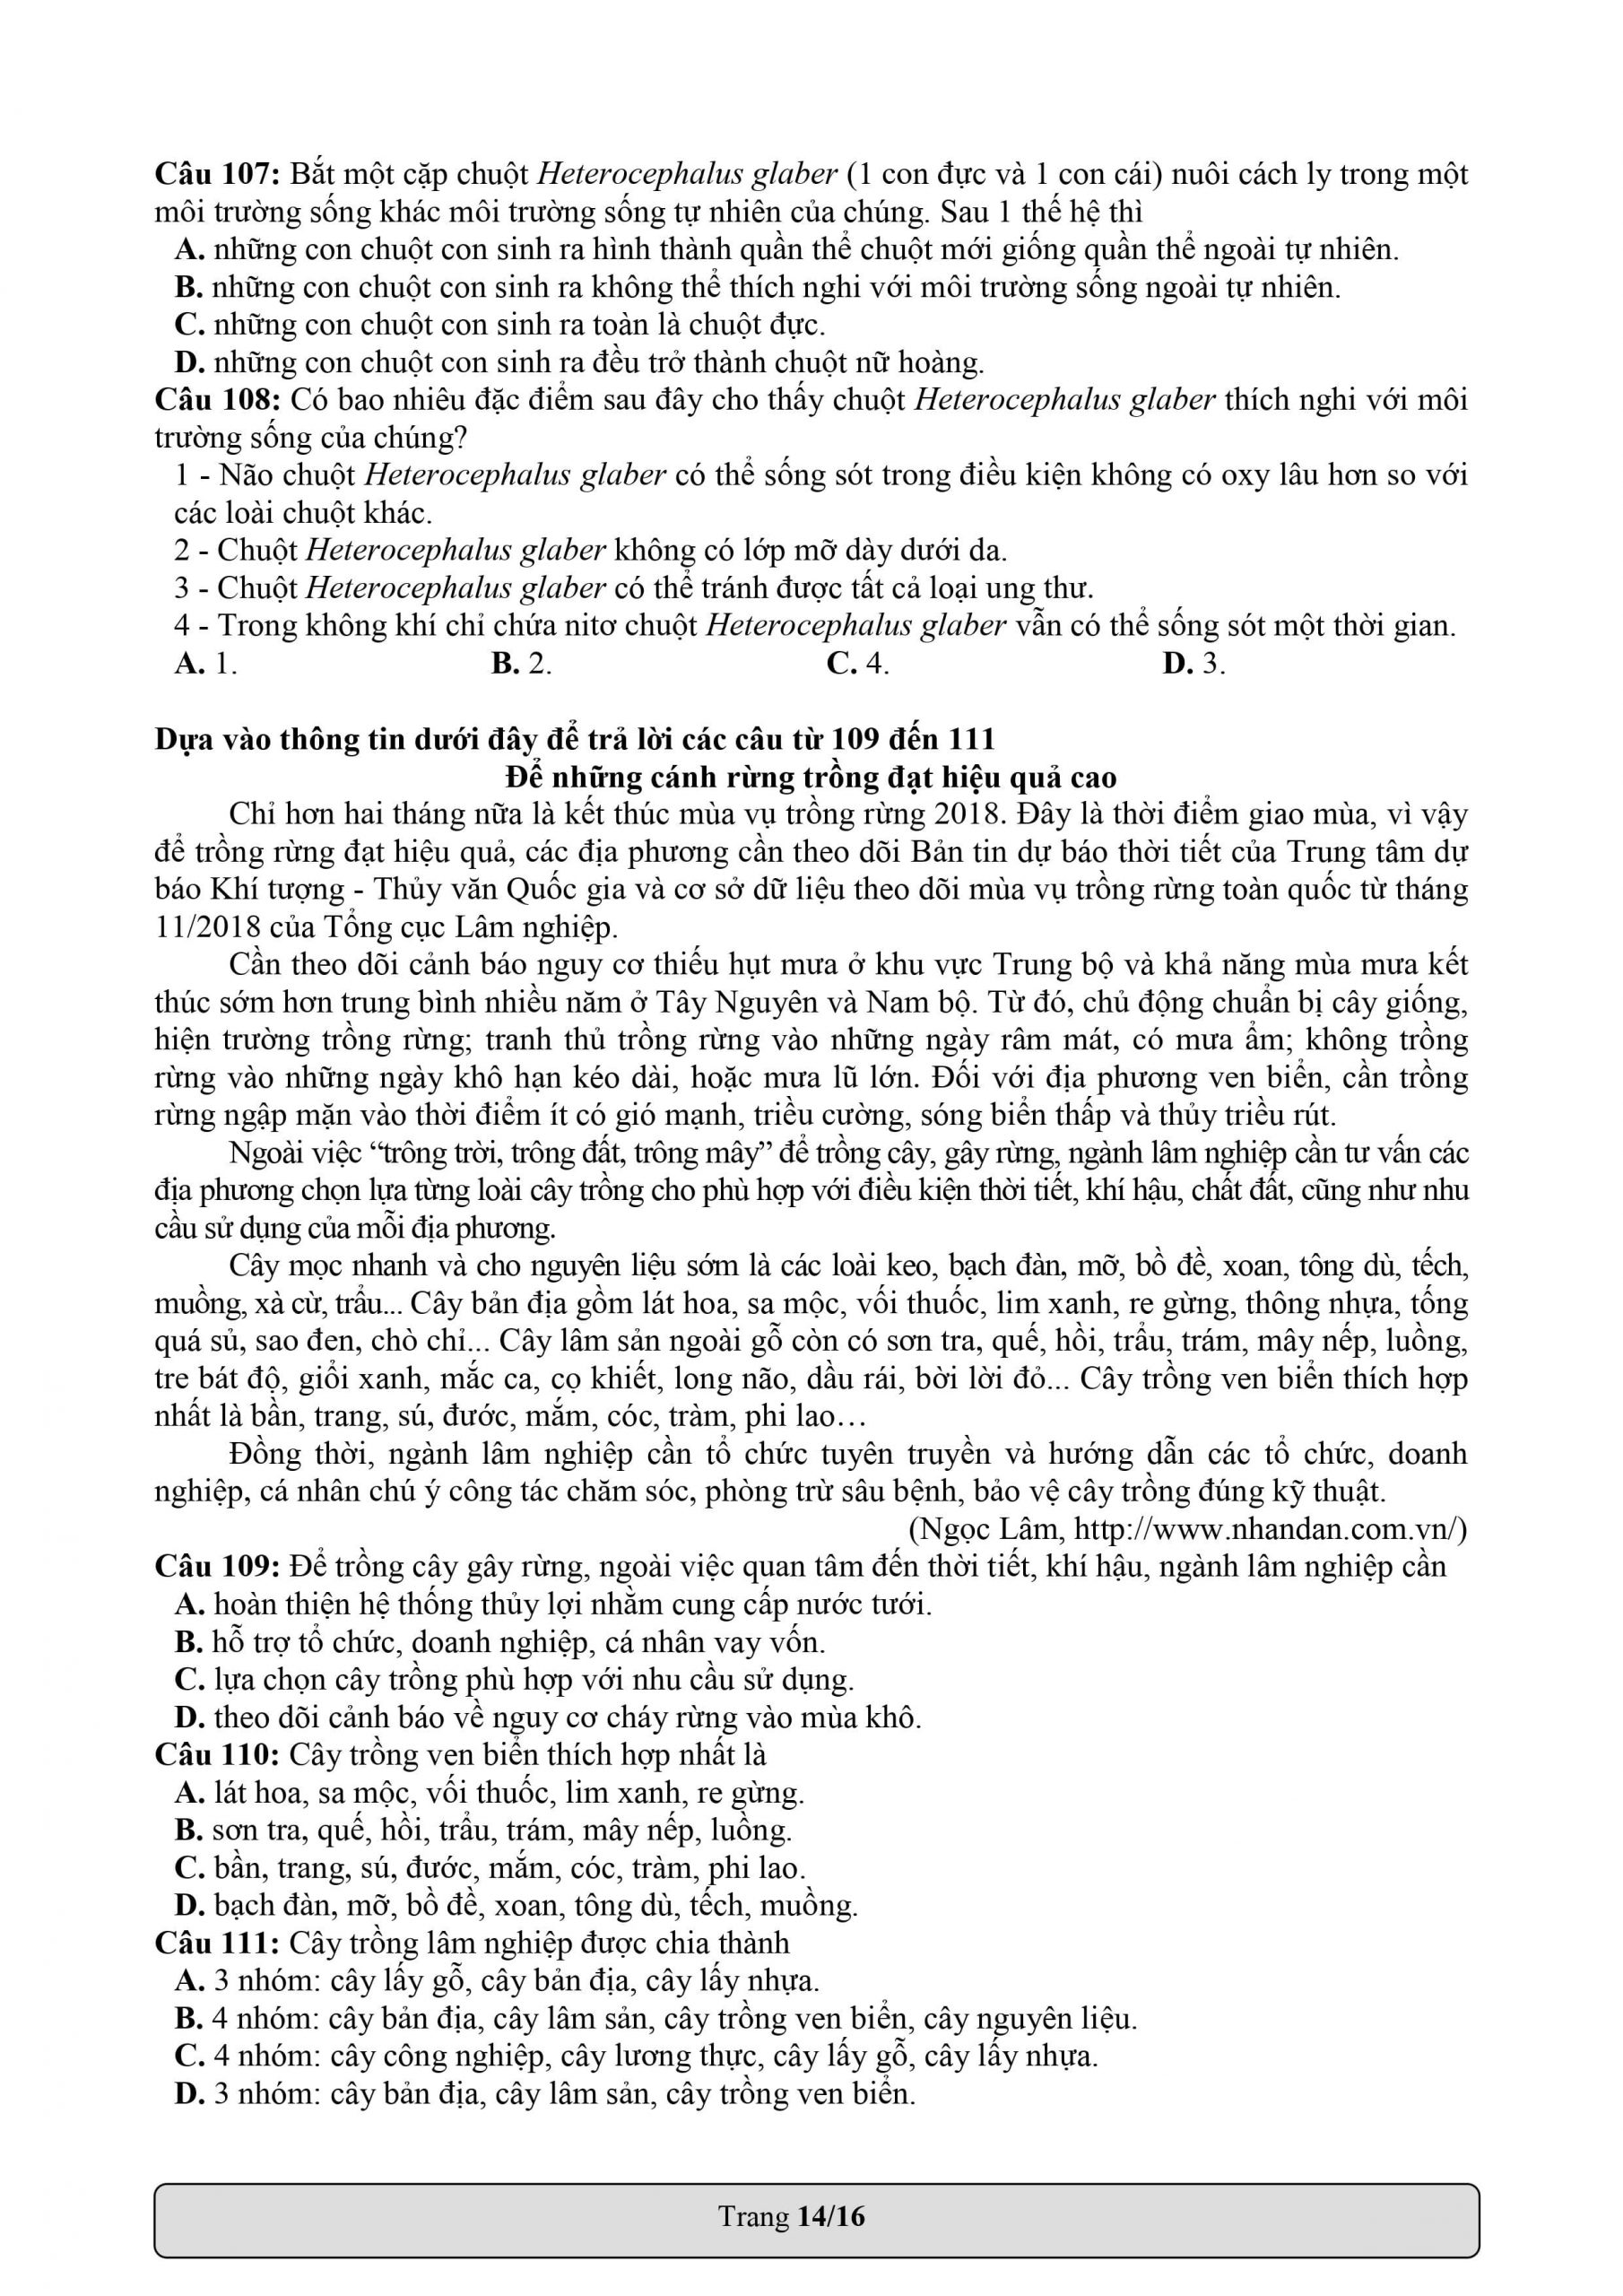 Câu 107 đến câu 111 trong phần giải quyết vấn đề